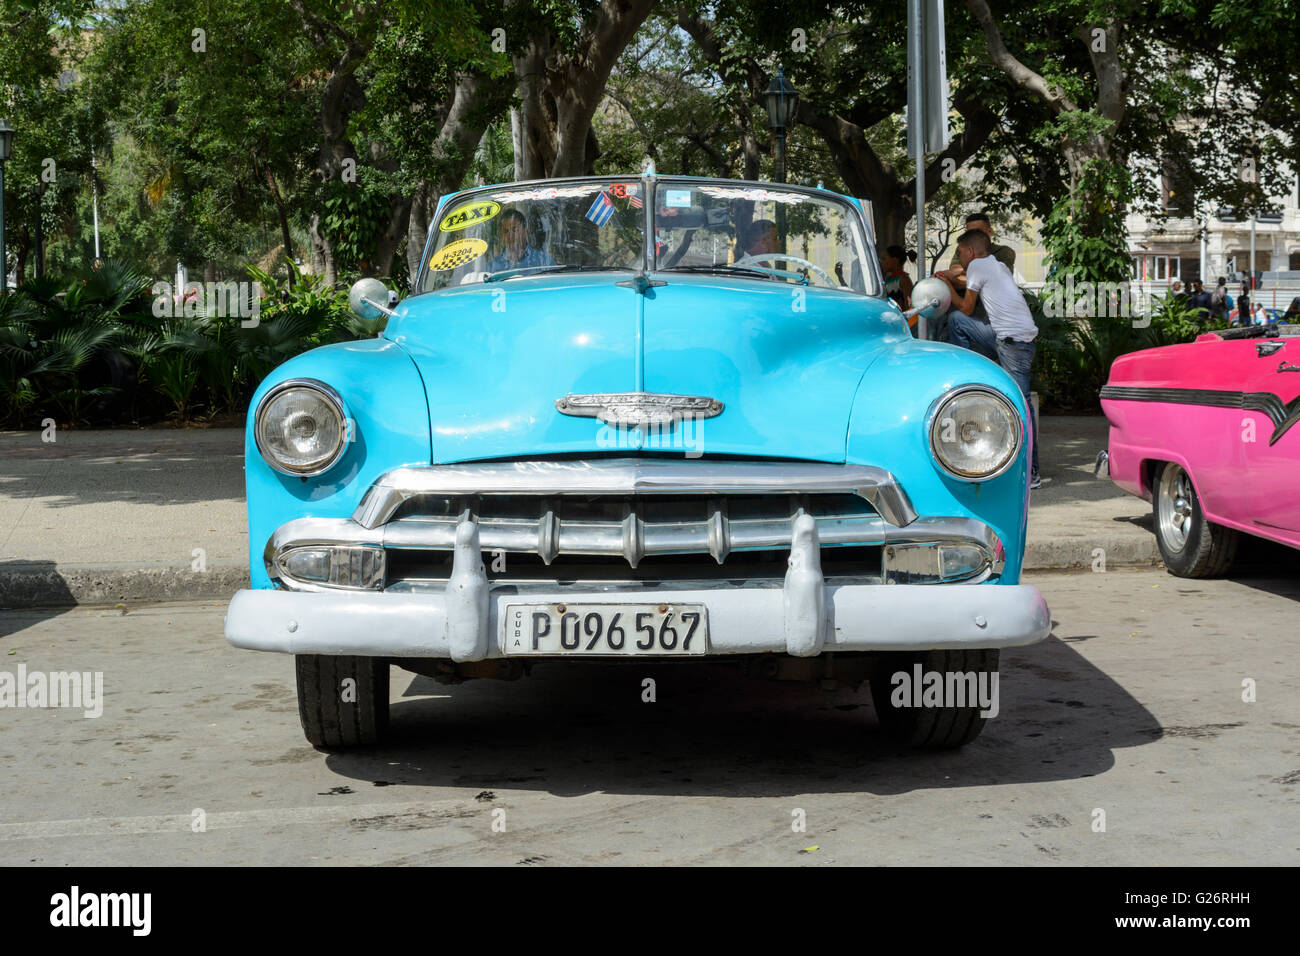 Vintage American car (Chevrolet) in Parque Central, Old Havana, Cuba Stock Photo